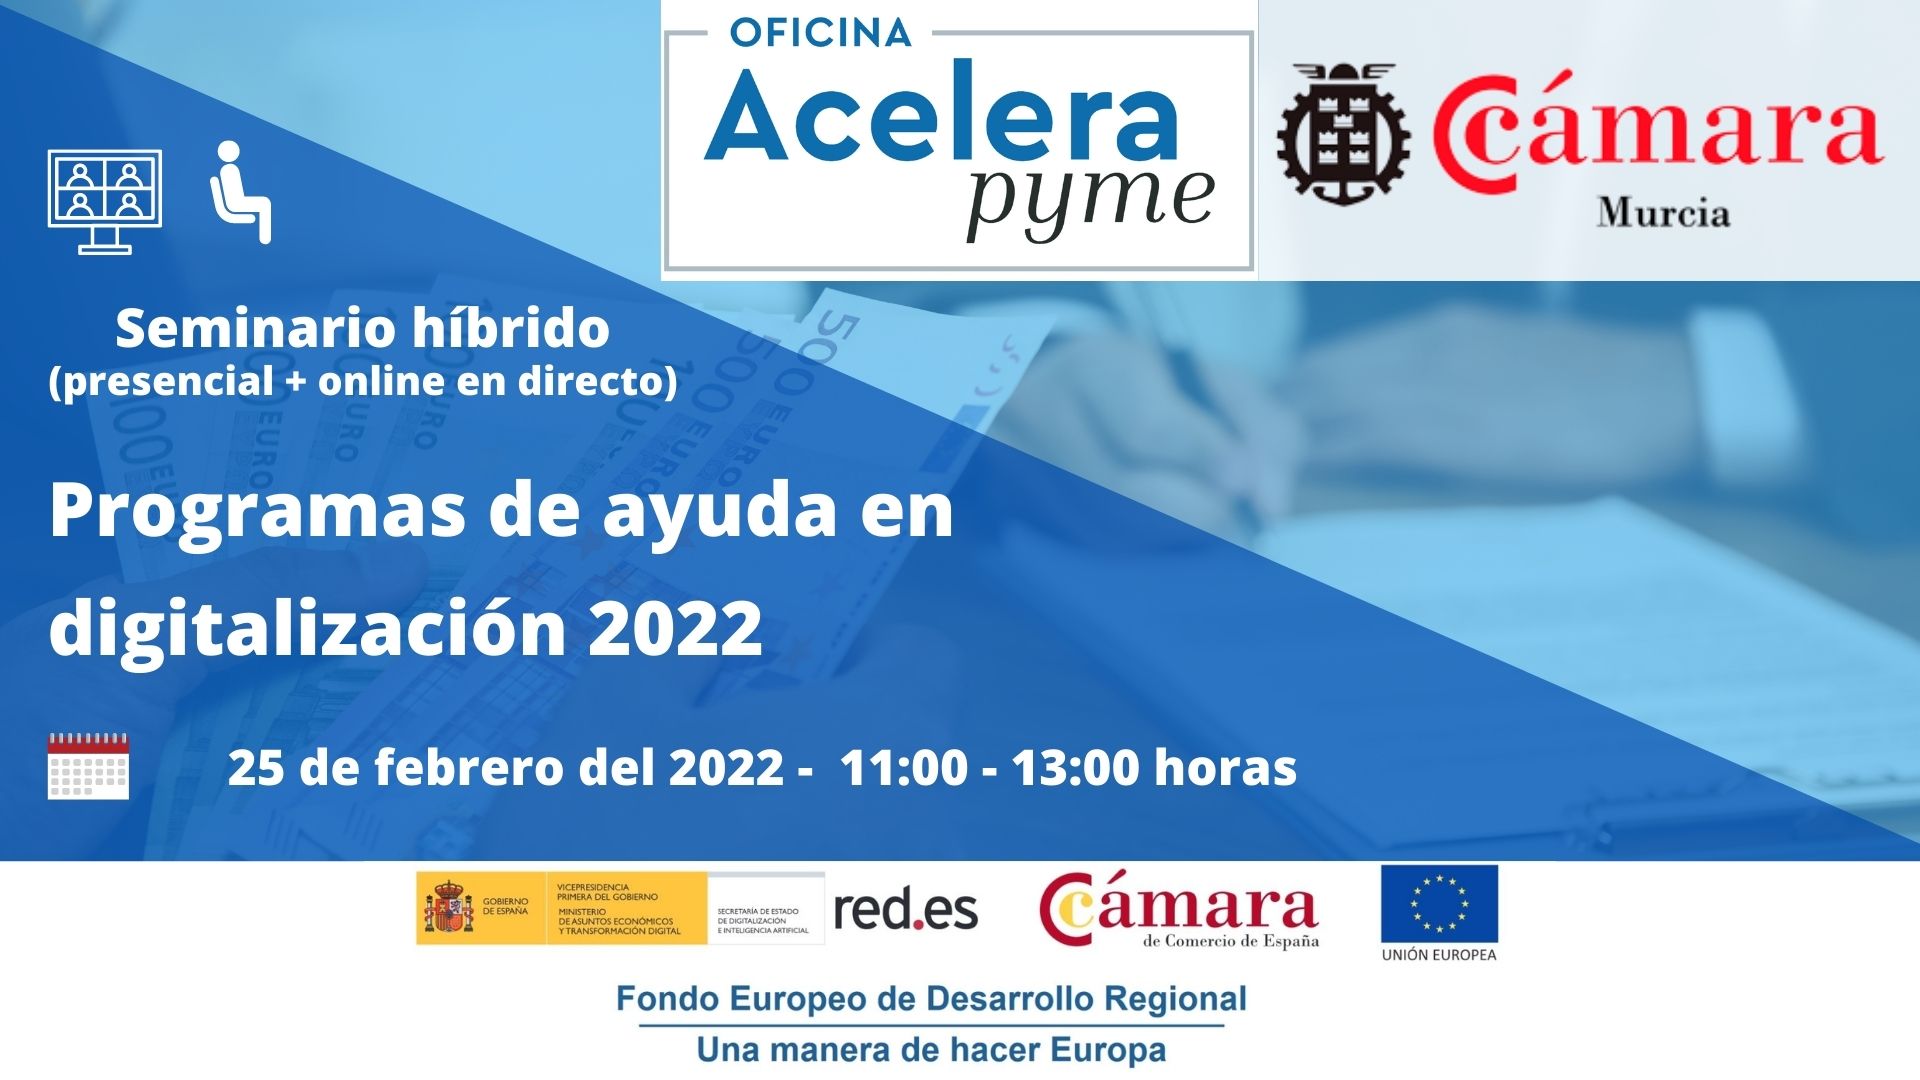 Seminario | Programas de ayuda en digitalización para emprendedores | Oficina Acelera Pyme | Cámara de Comercio de Murcia